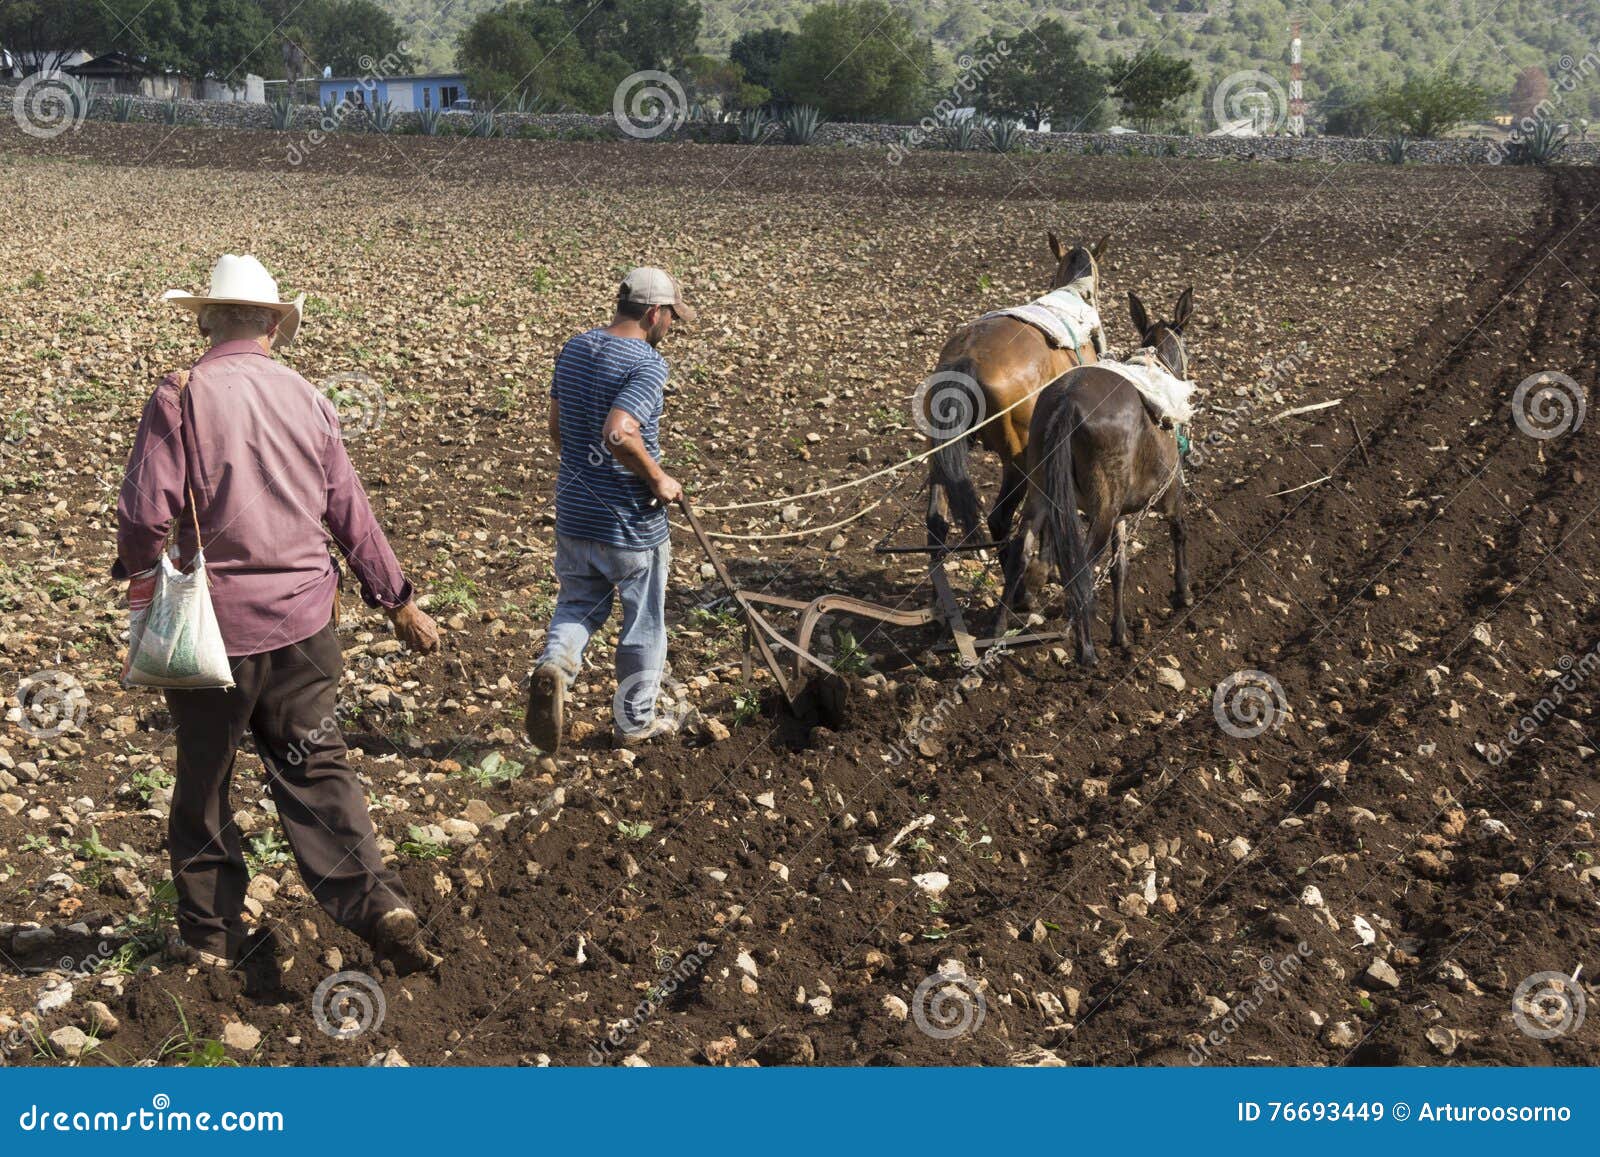 Mexicaanse boeren redactionele stock afbeelding. Image of landbouw ...